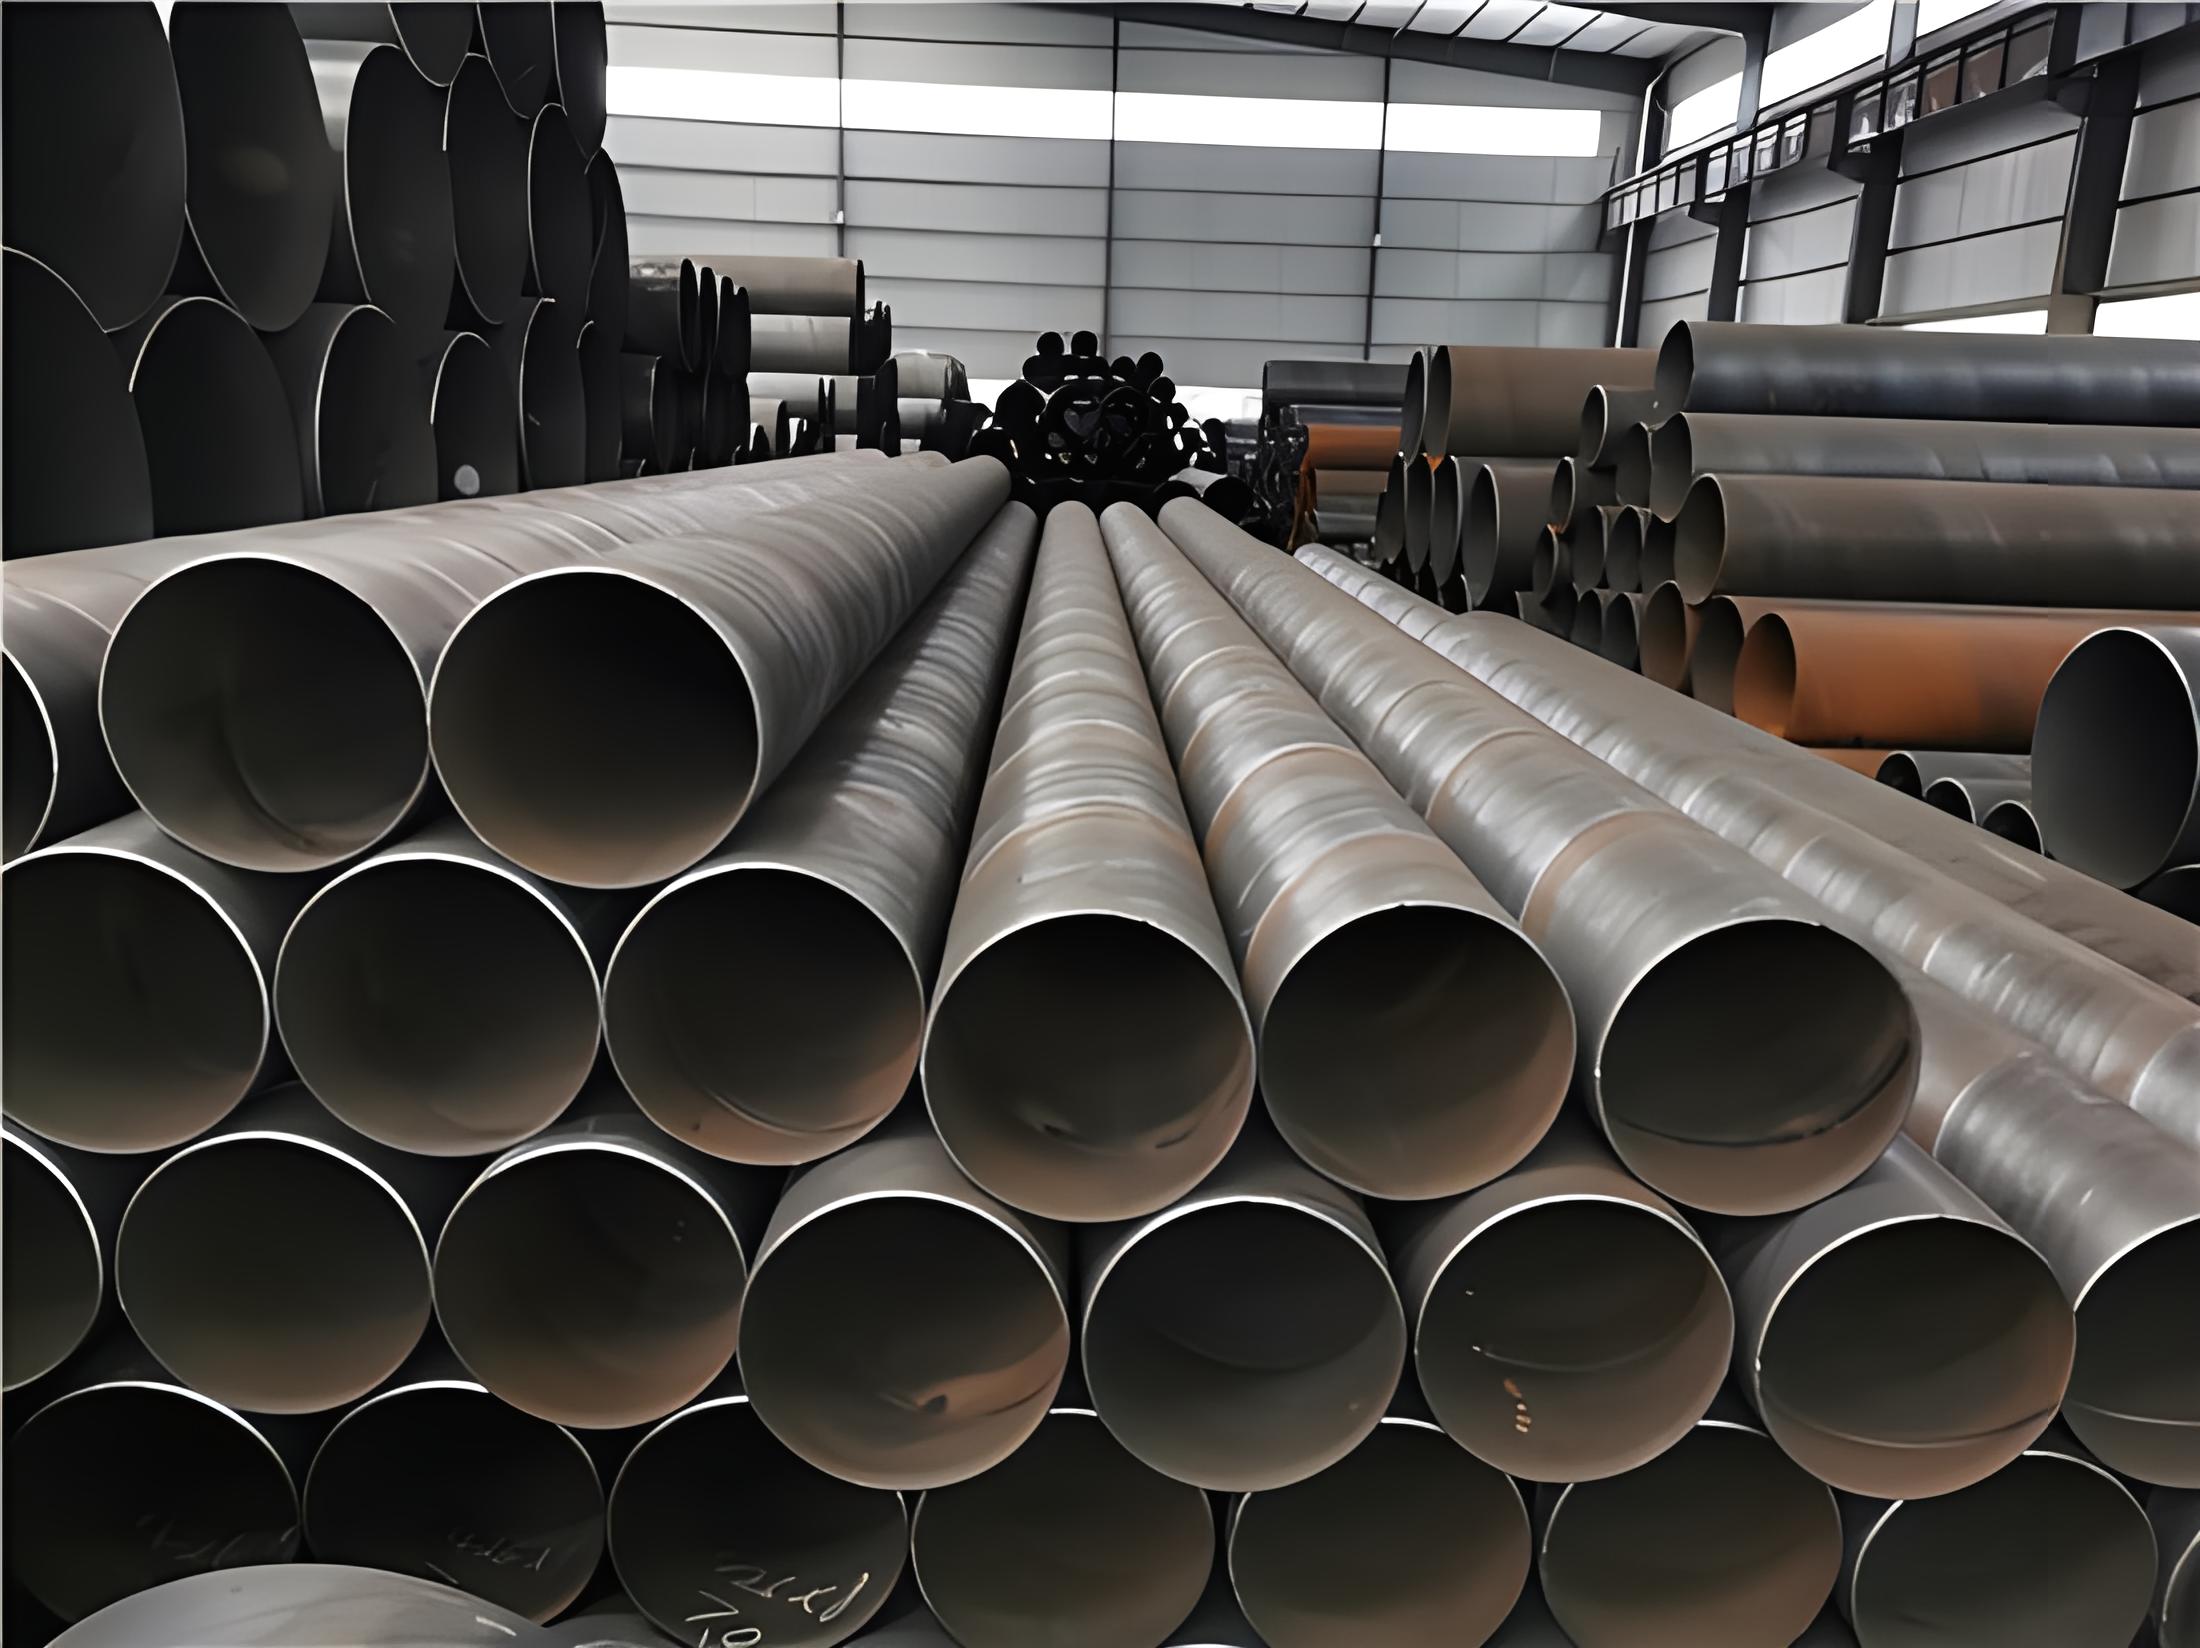 鄂州螺旋钢管现代工业建设的坚实基石